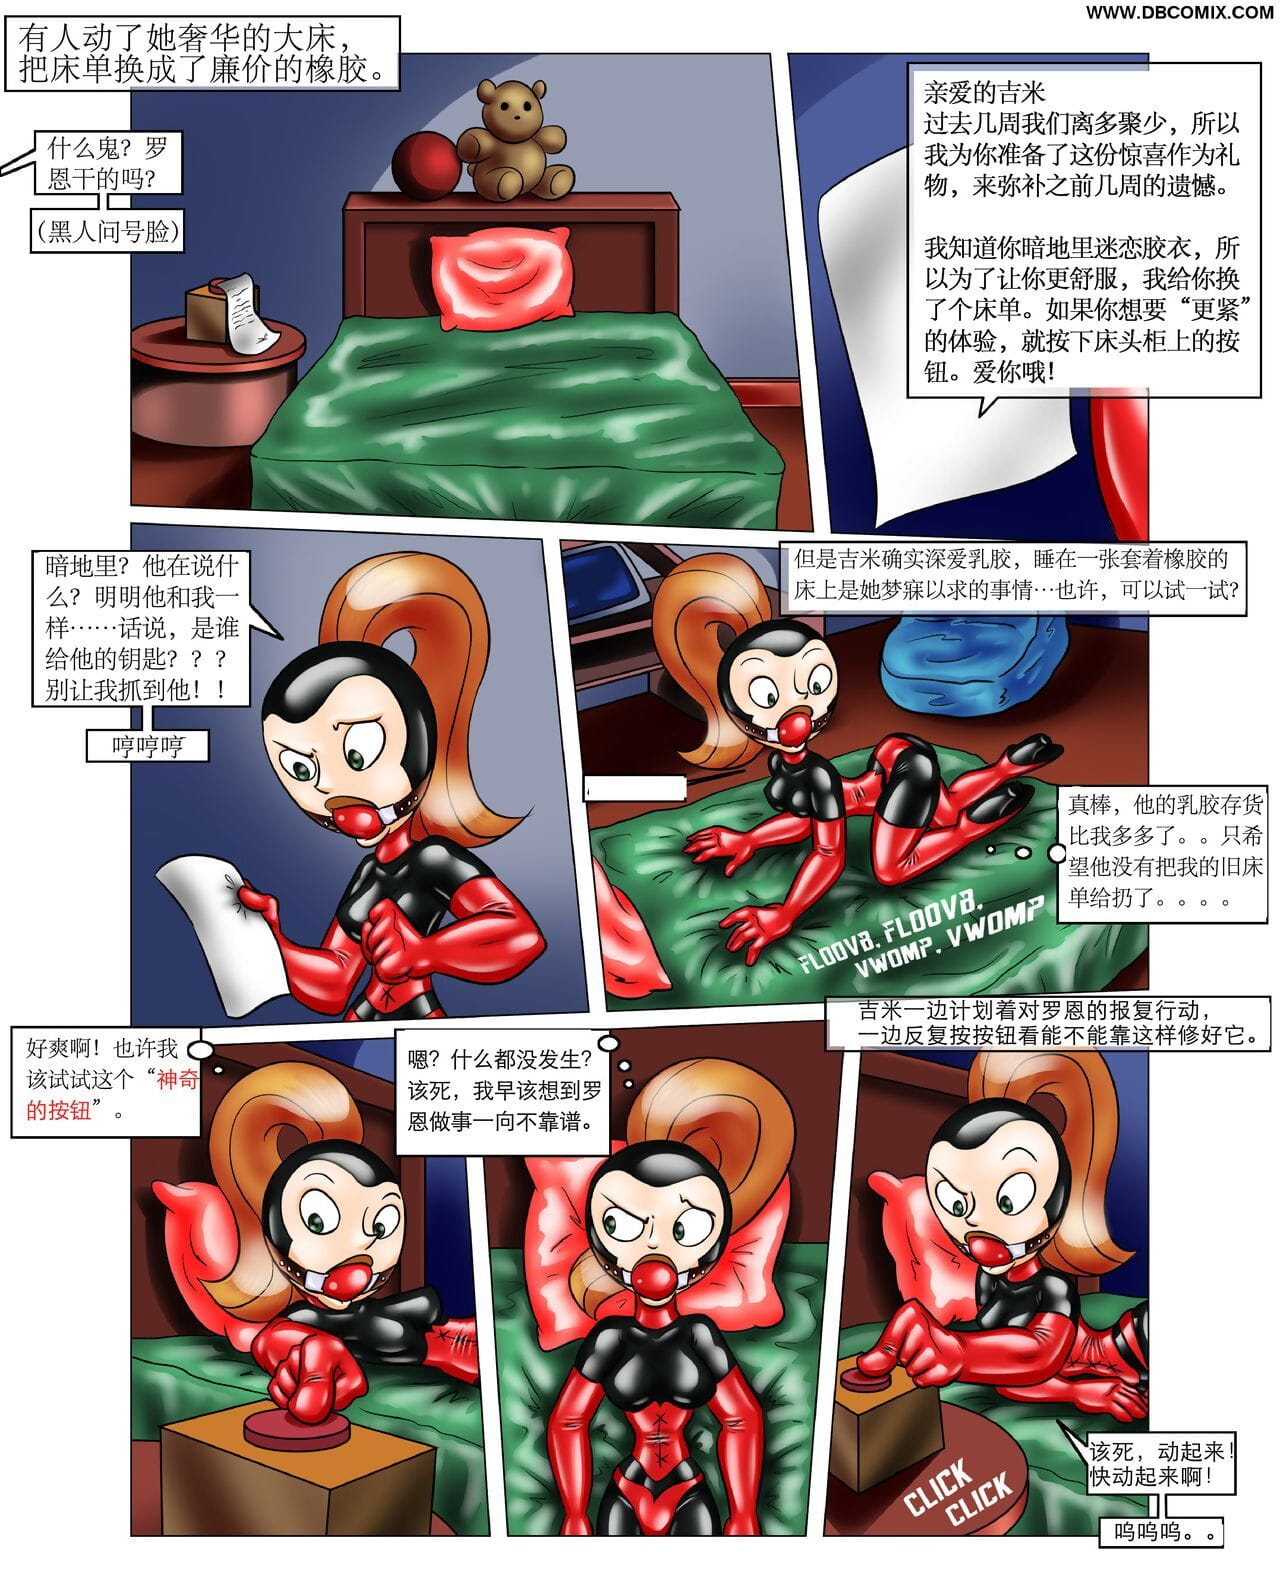 невероятно матерные ронс Подарок 【大头翻译】 page 1